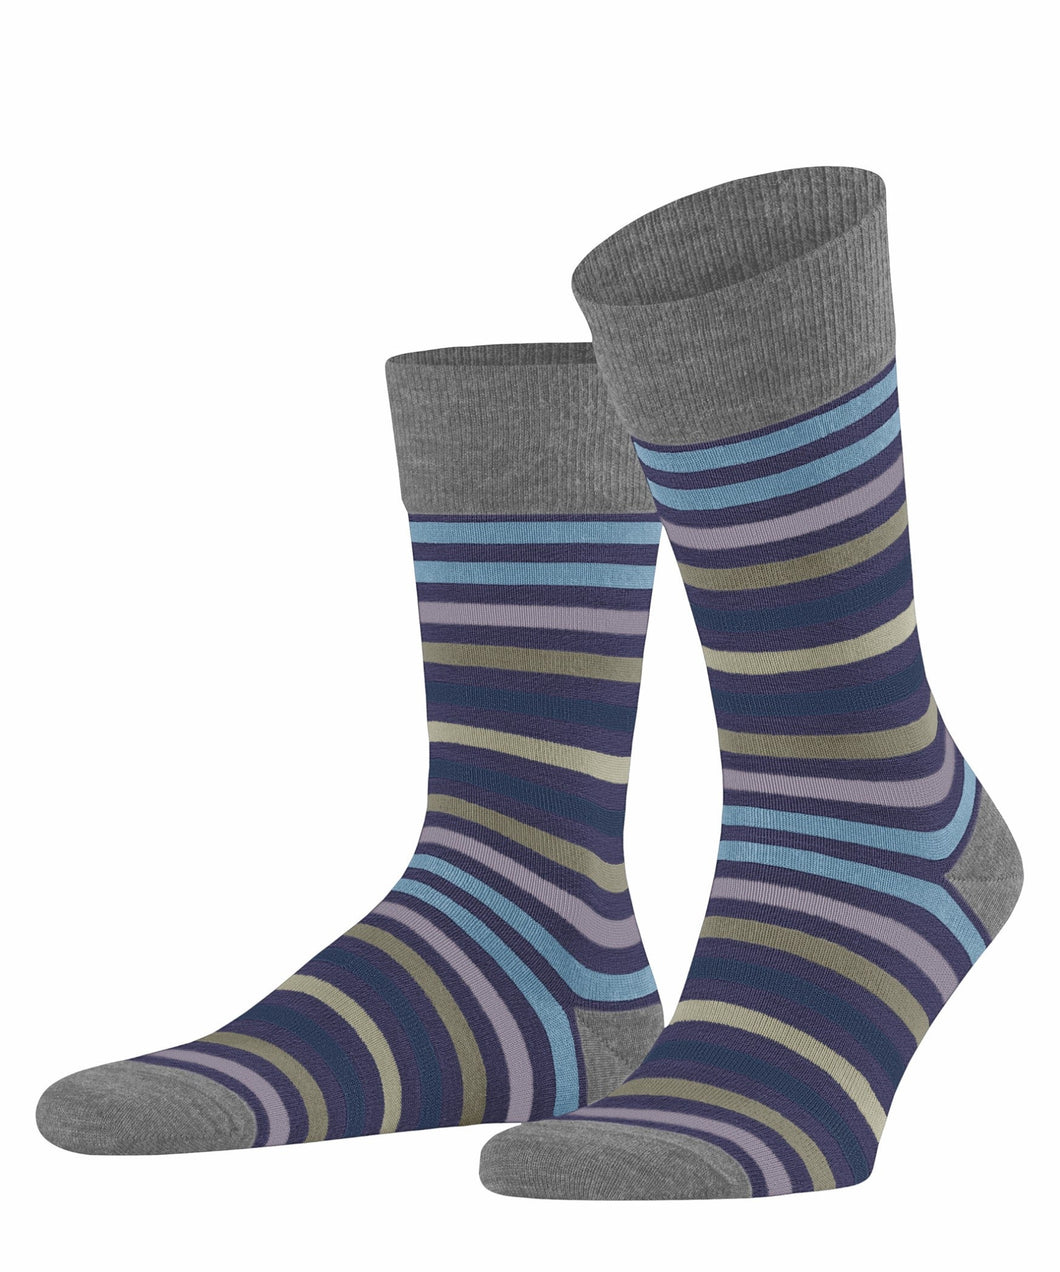 FALKE Tinted Stripe Socks in Grey-Viola